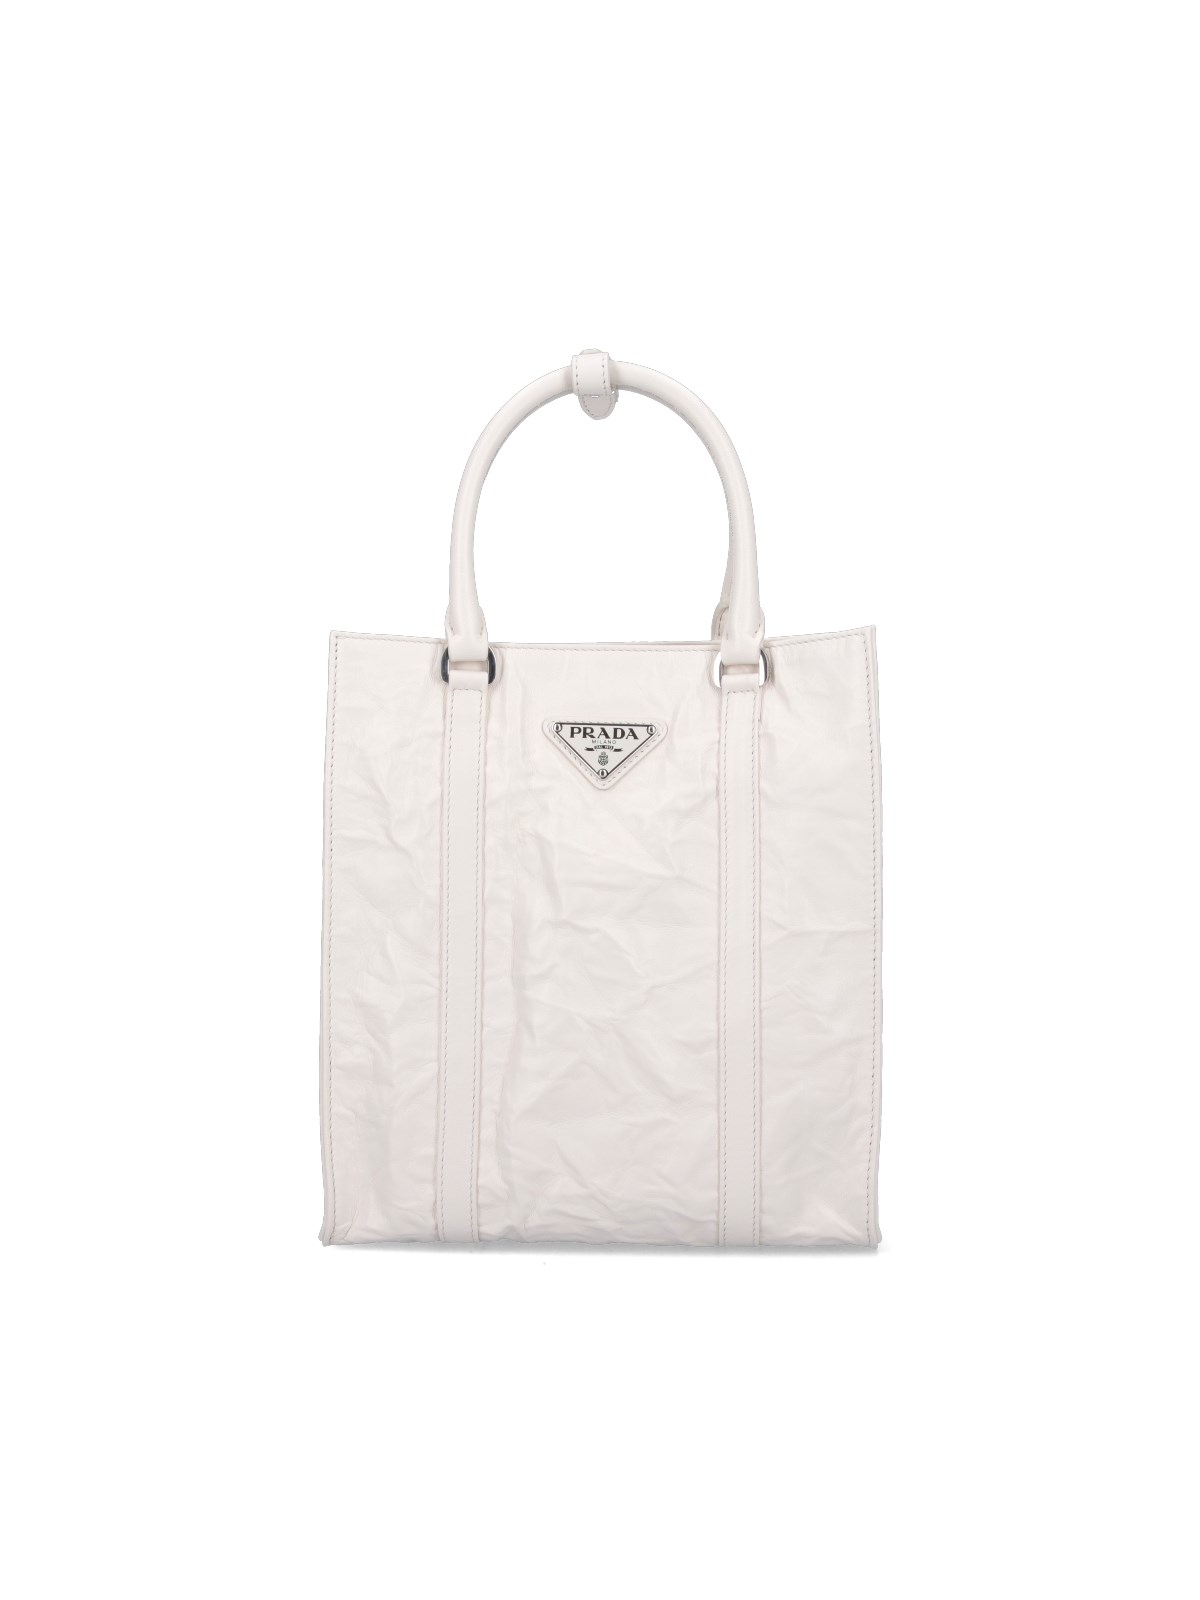 Prada Logo Tote Bag In White